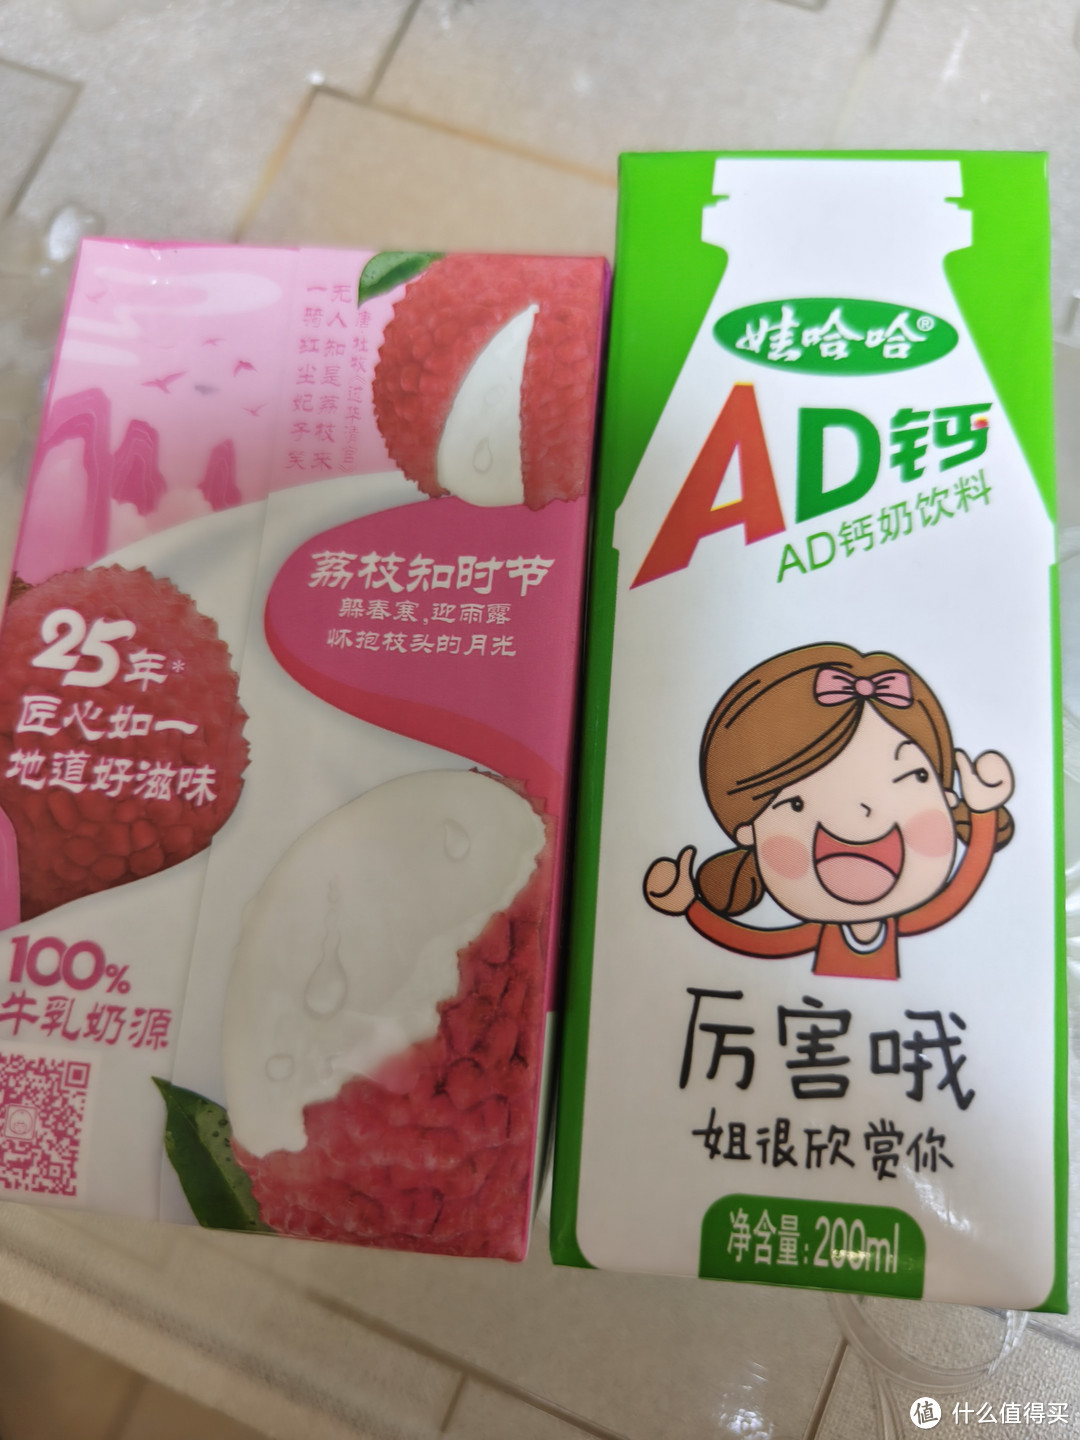 伊利优酸乳和娃哈哈AD钙奶之间有啥不同？